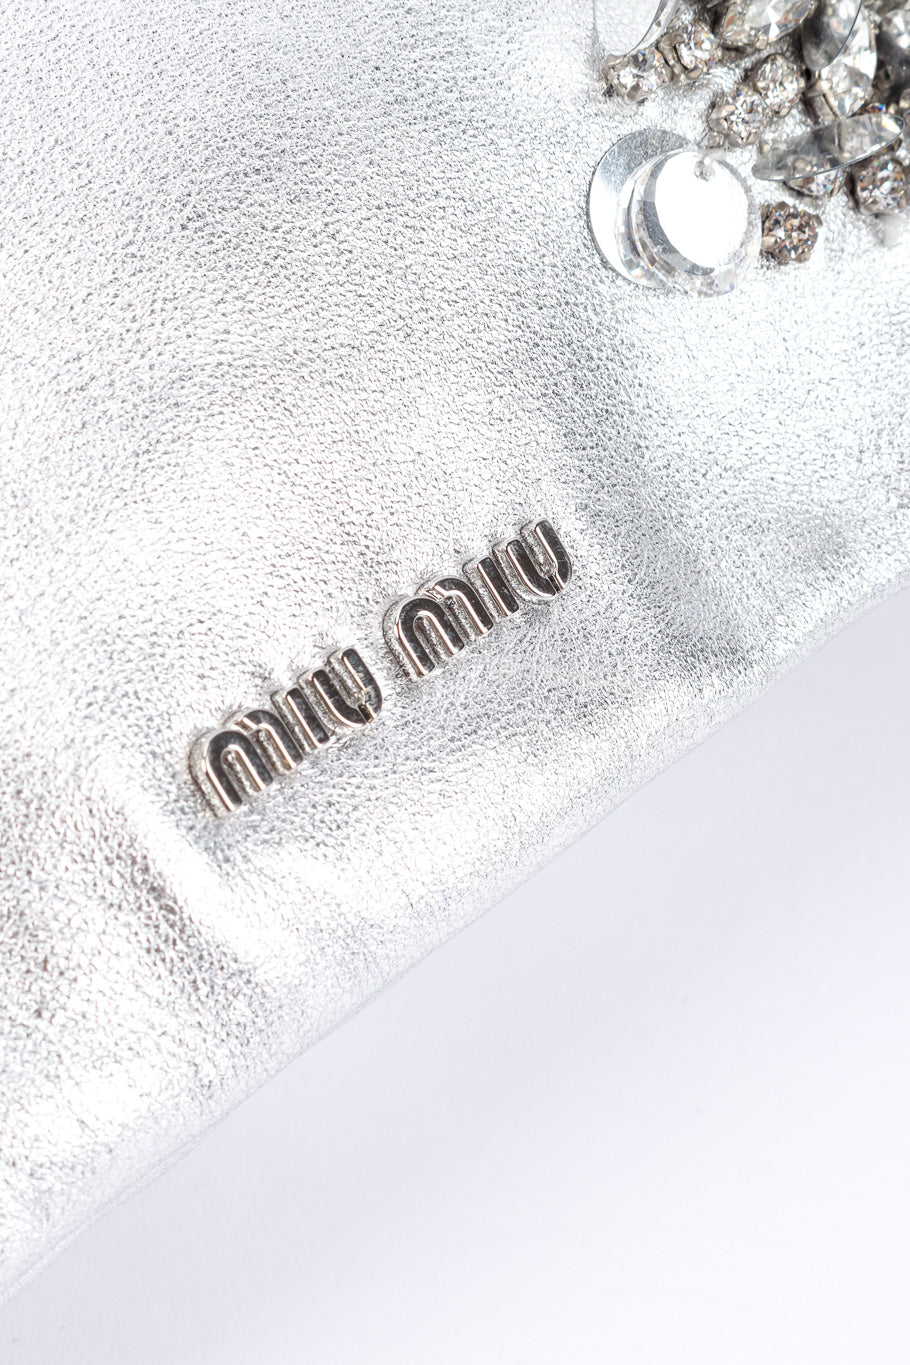 Miu Miu Metallic Drawstring Bag signature charm closeup @Recessla